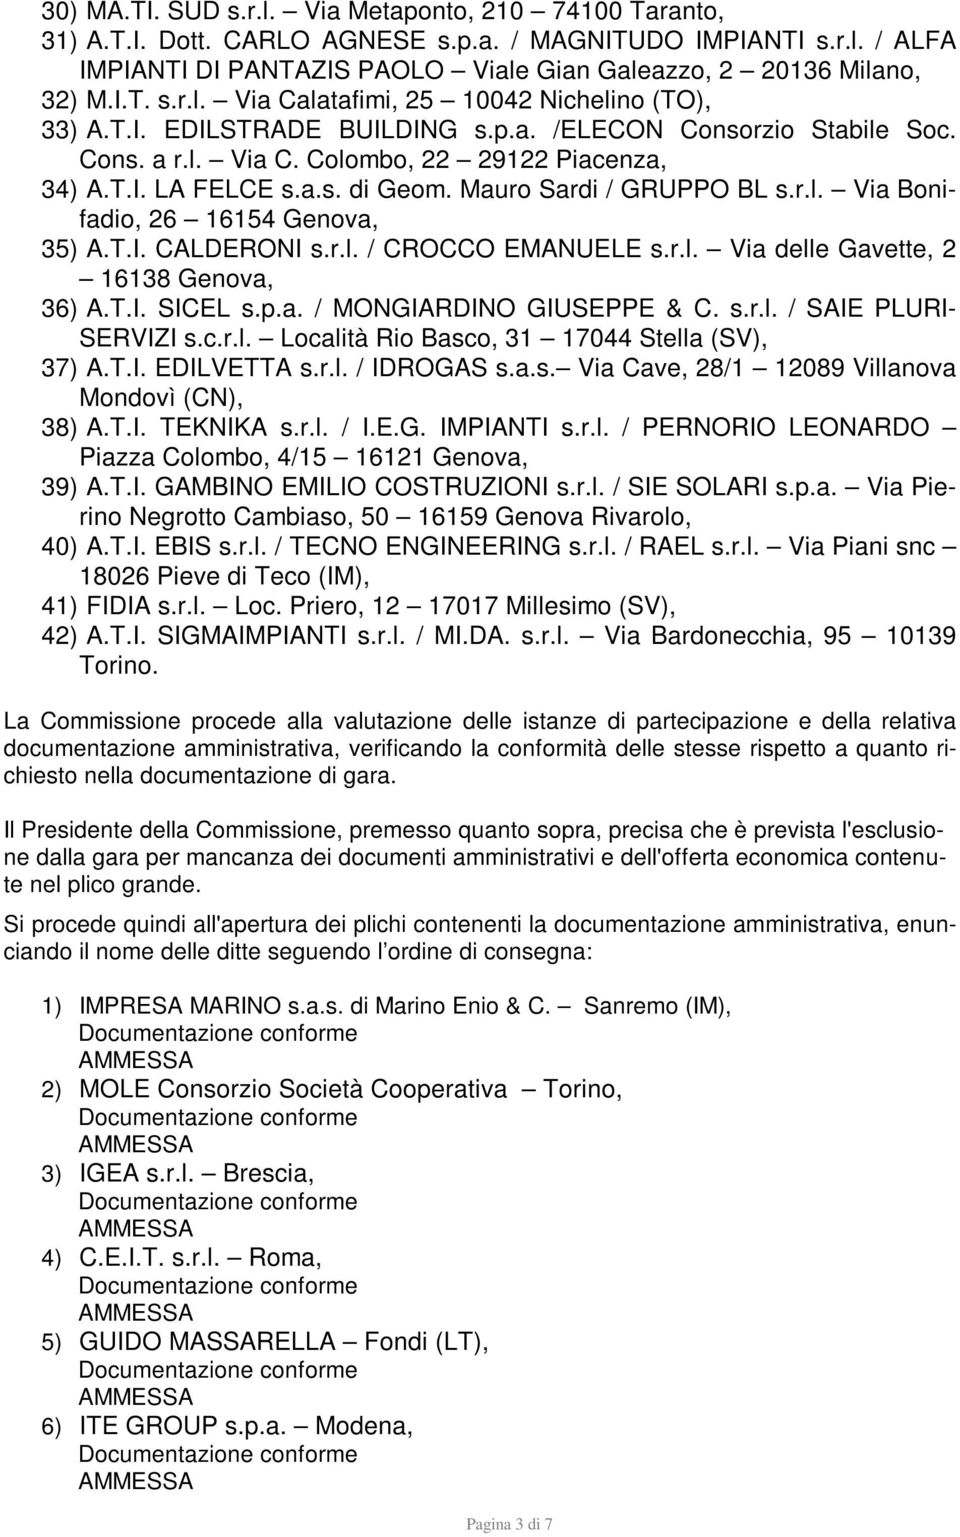 T.I. CALDERONI s.r.l. / CROCCO EMANUELE s.r.l. Via delle Gavette, 2 16138 Genova, 36) A.T.I. SICEL s.p.a. / MONGIARDINO GIUSEPPE & C. s.r.l. / SAIE PLURI- SERVIZI s.c.r.l. Località Rio Basco, 31 17044 Stella (SV), 37) A.